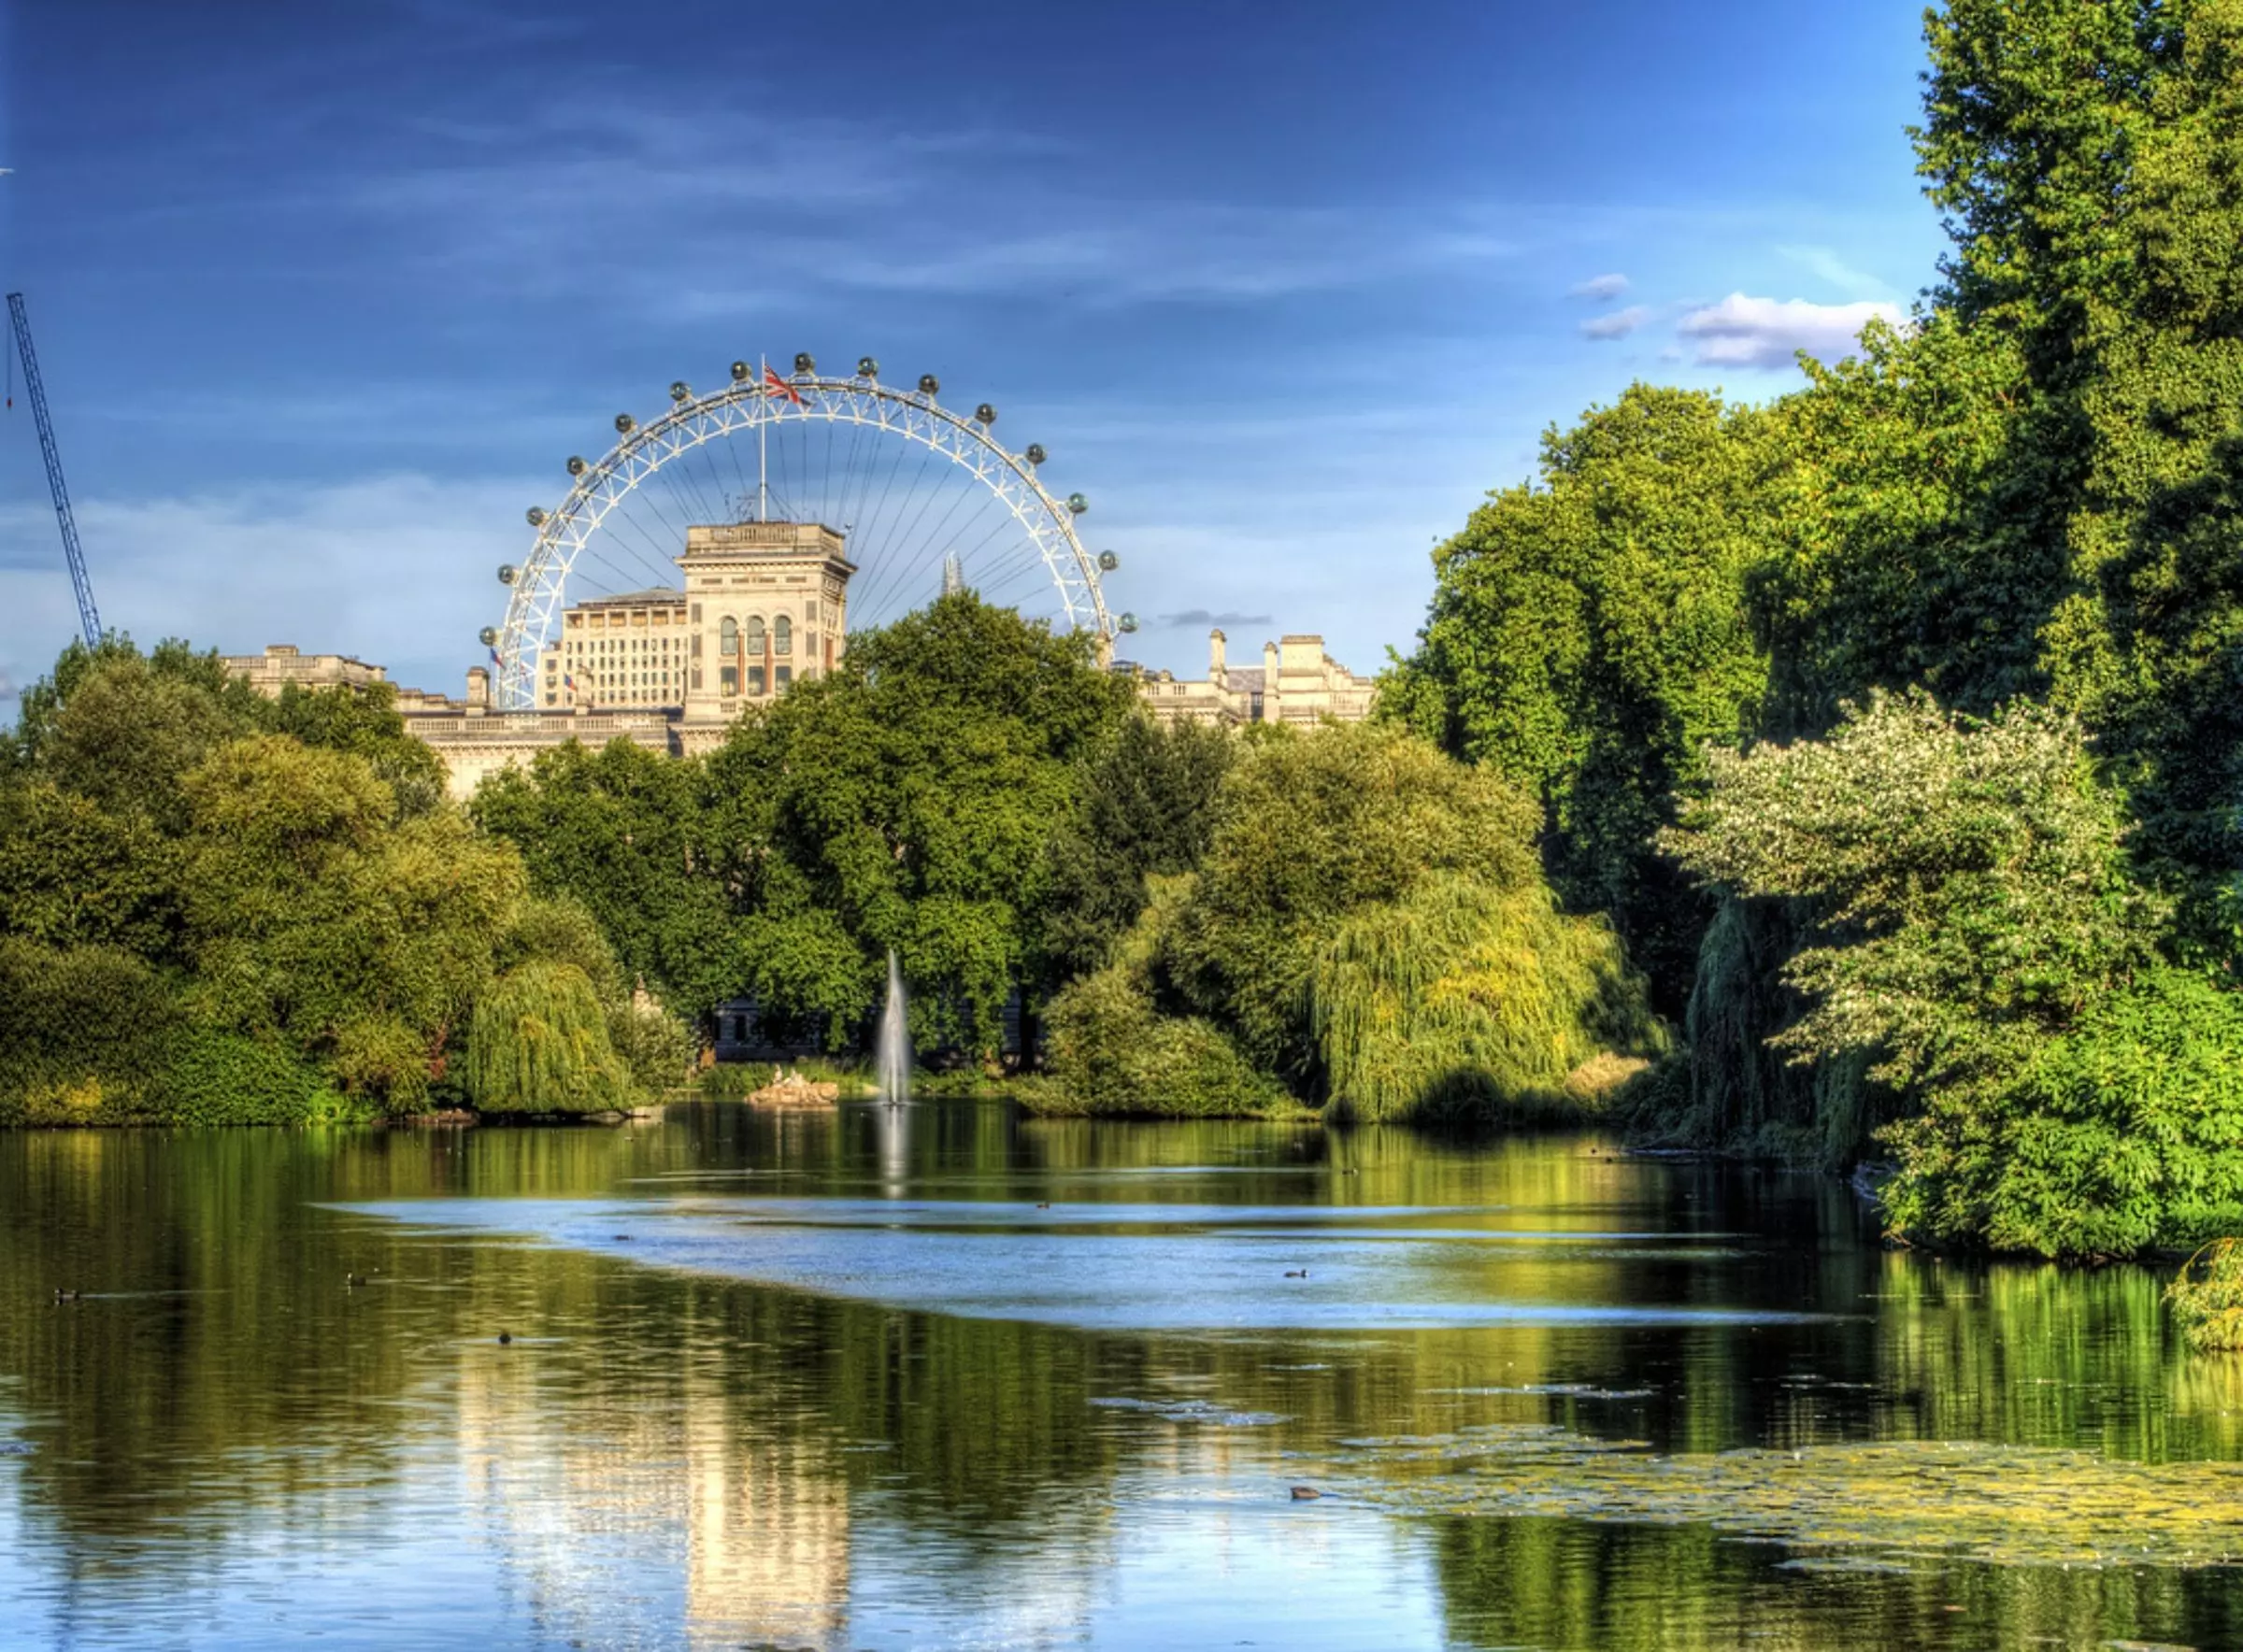 ۵ مورد از بهترین پارک های لندن